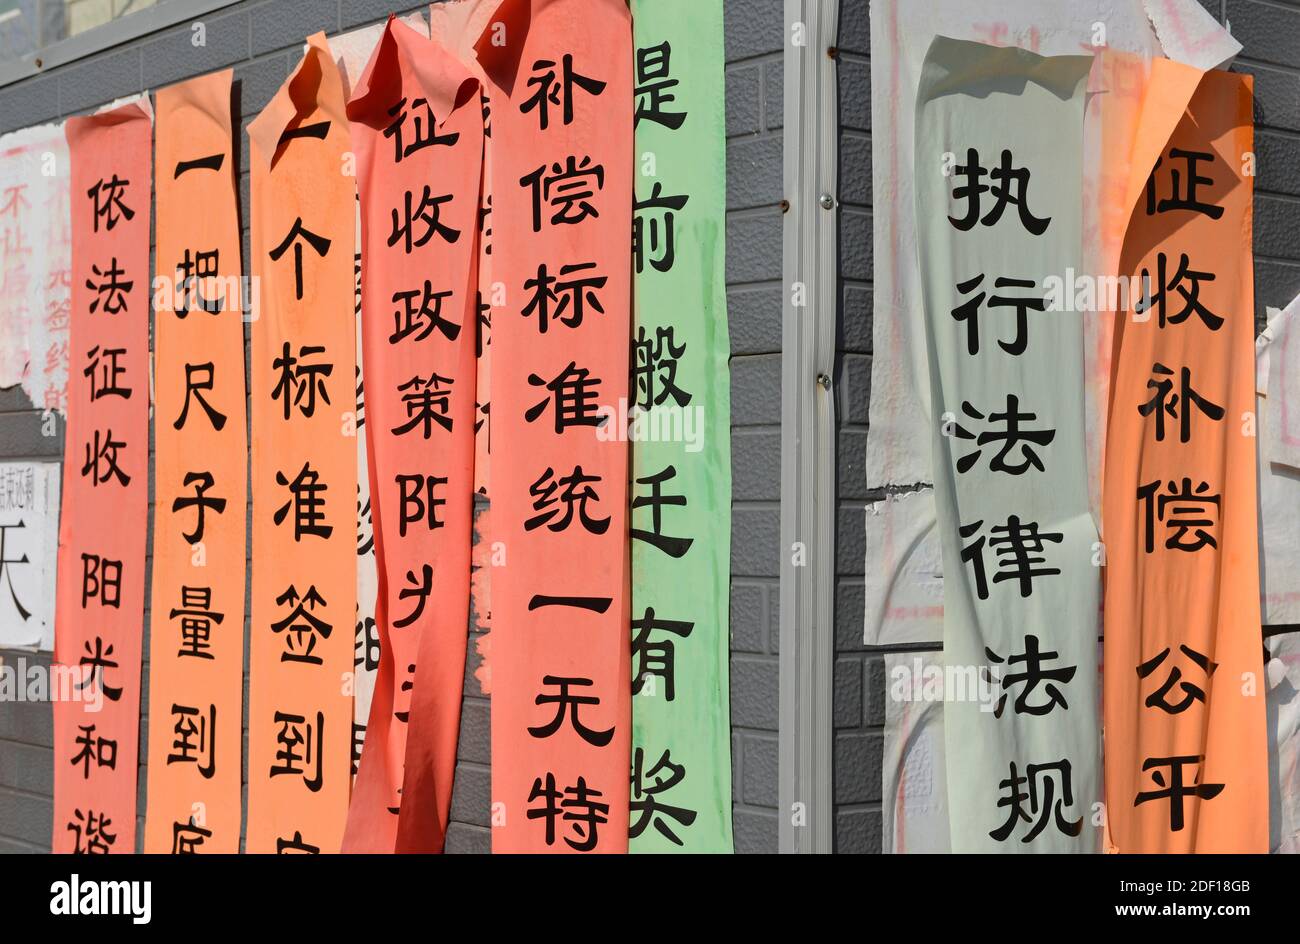 Bandiere che richiedono l'adesione e l'attuazione delle regole sono pubblicati su negozi illegali da demolire nel centro occidentale di Pechino, Cina Foto Stock